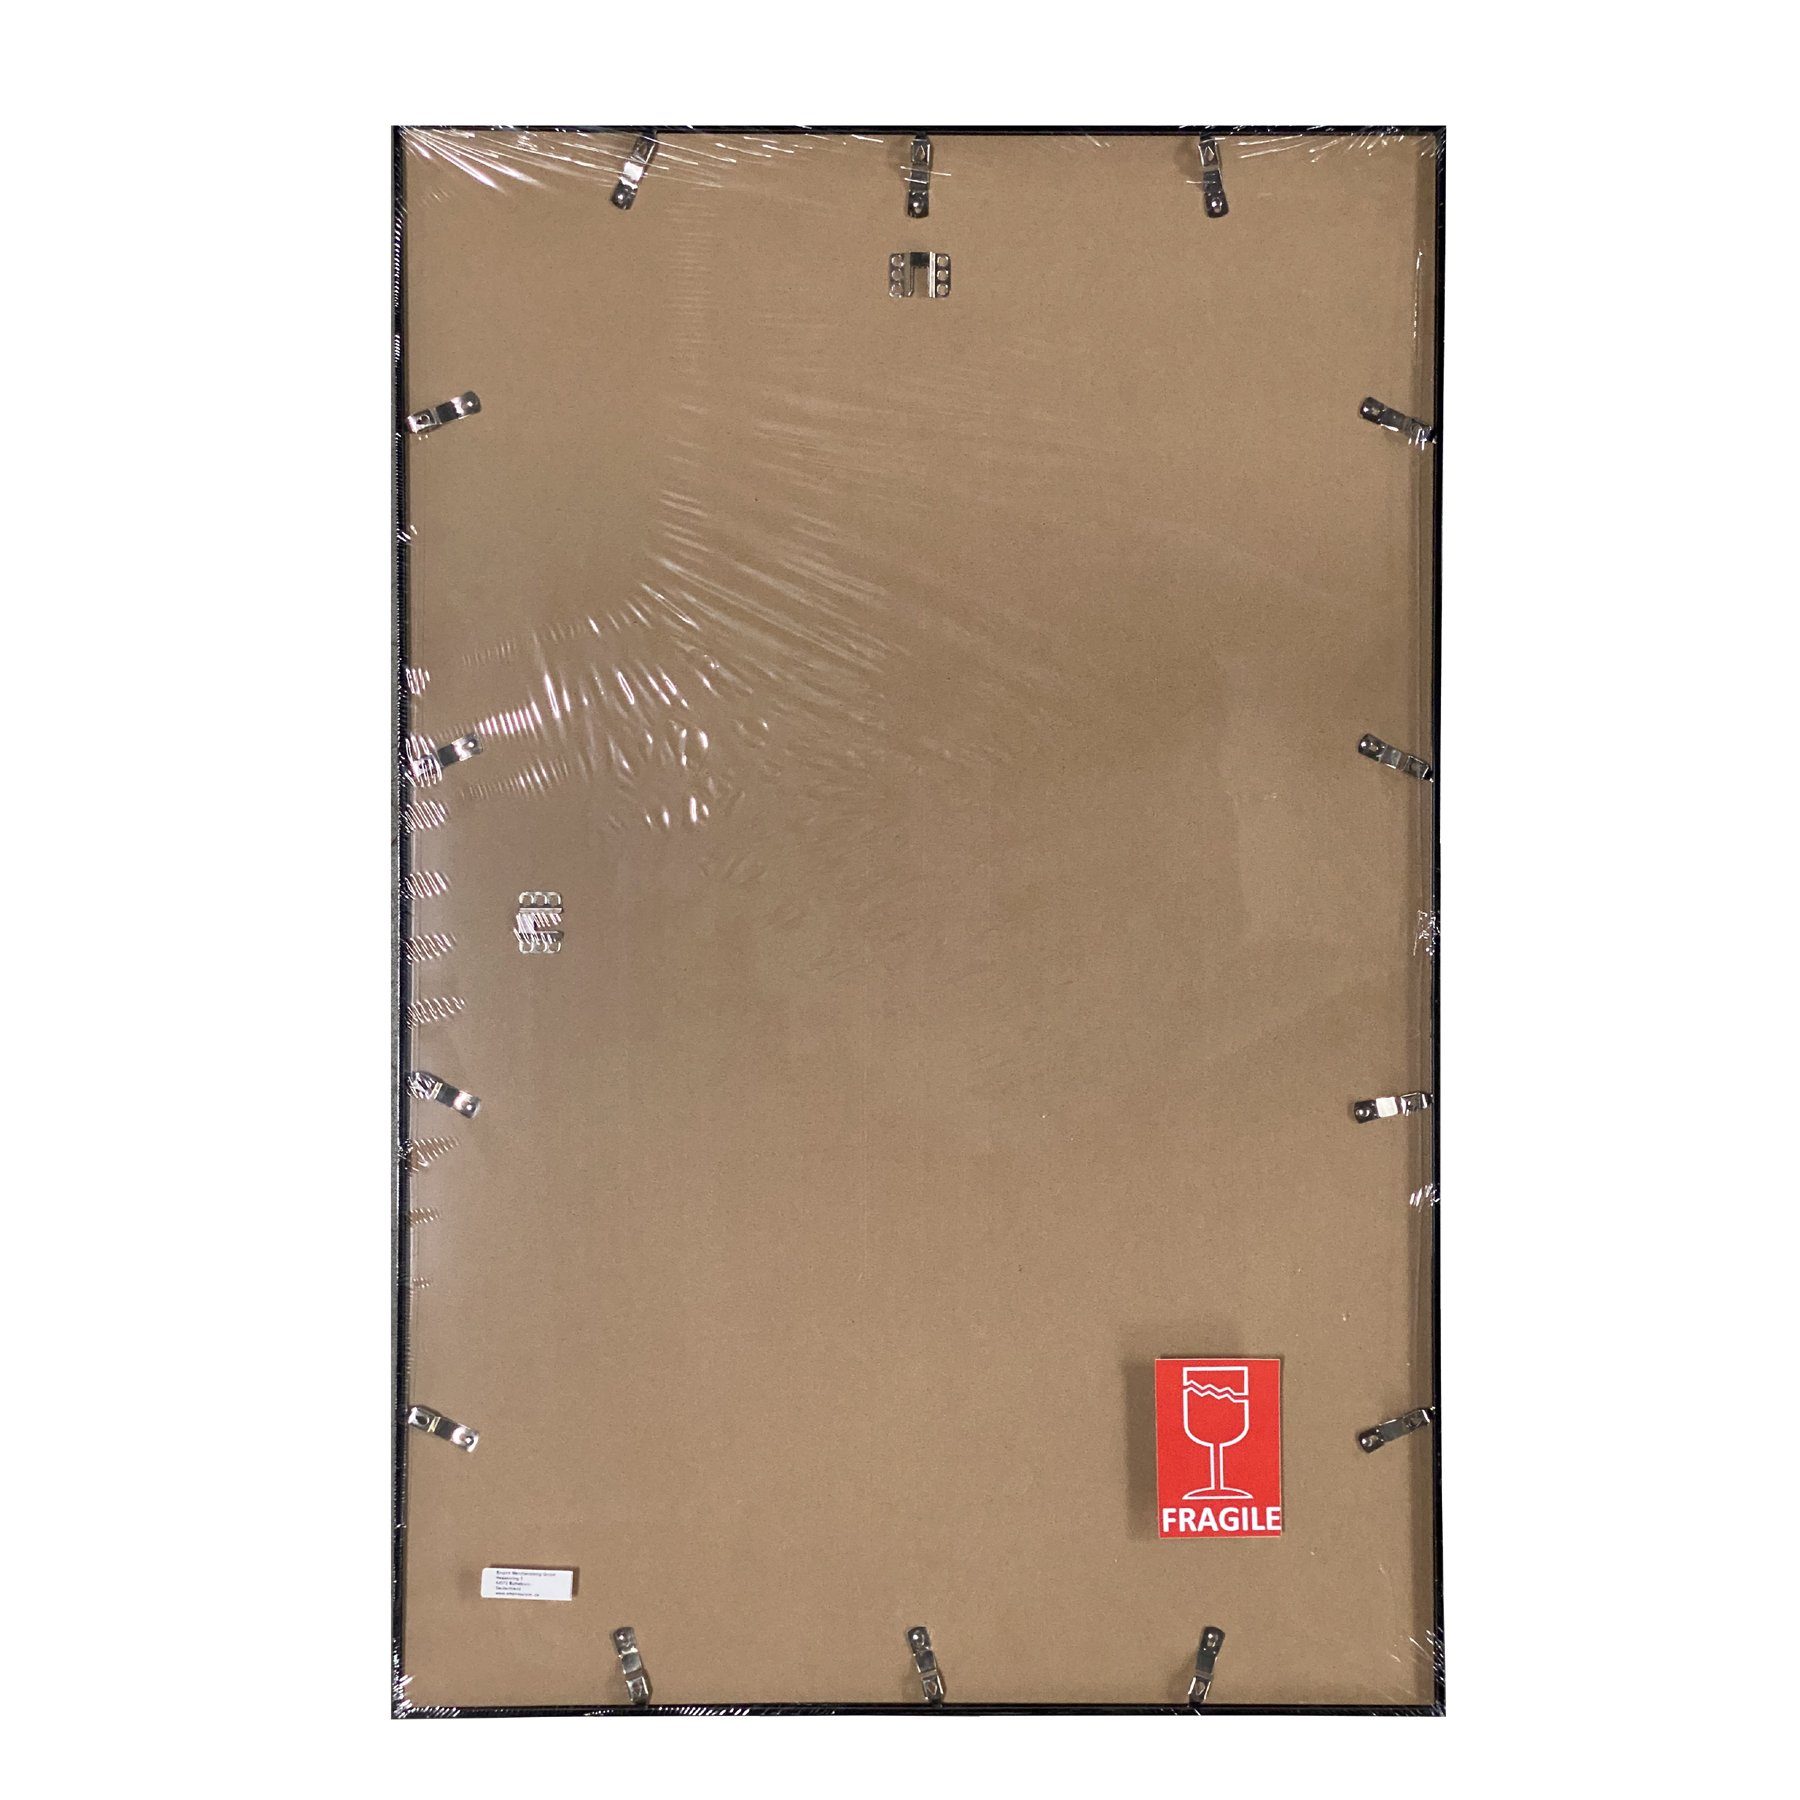 empireposter Rahmen Wechselrahmen, Shinsuke® Maxi Eiche Ausführung: Größe 61x91,5 MDF Acryl-Scheibe cm, (Imitat) mit